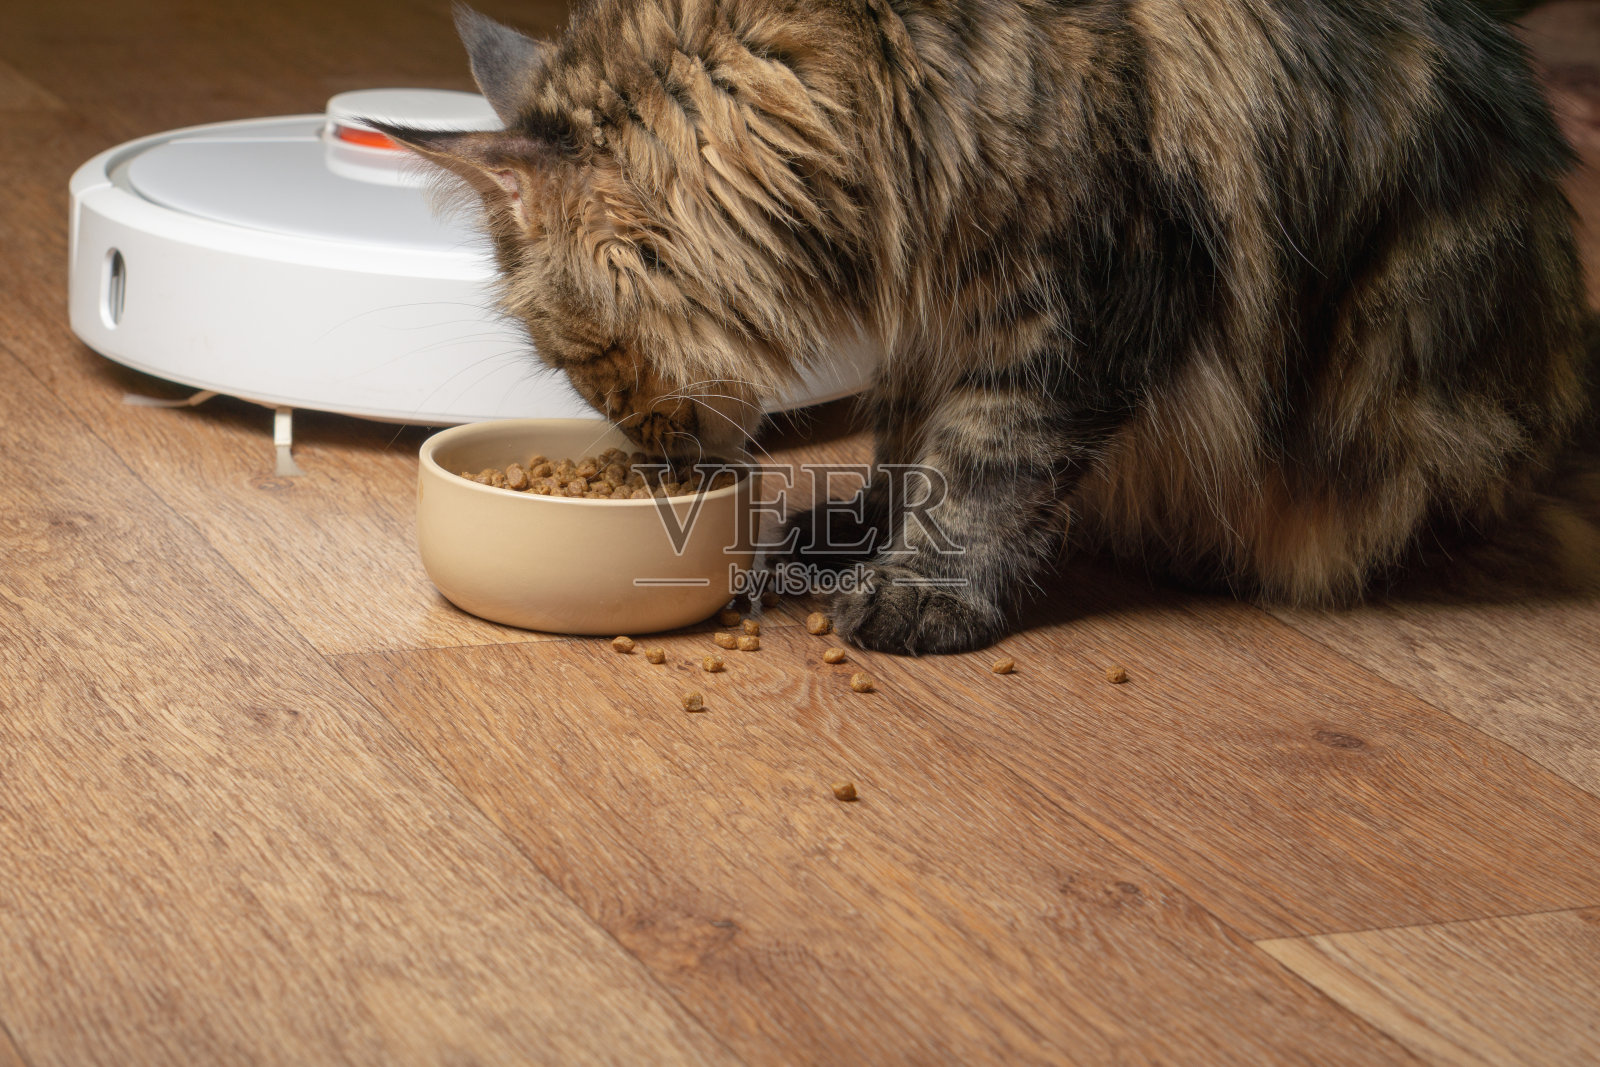 在机器人真空吸尘器的背景下，一只猫正在吃碗里的东西照片摄影图片